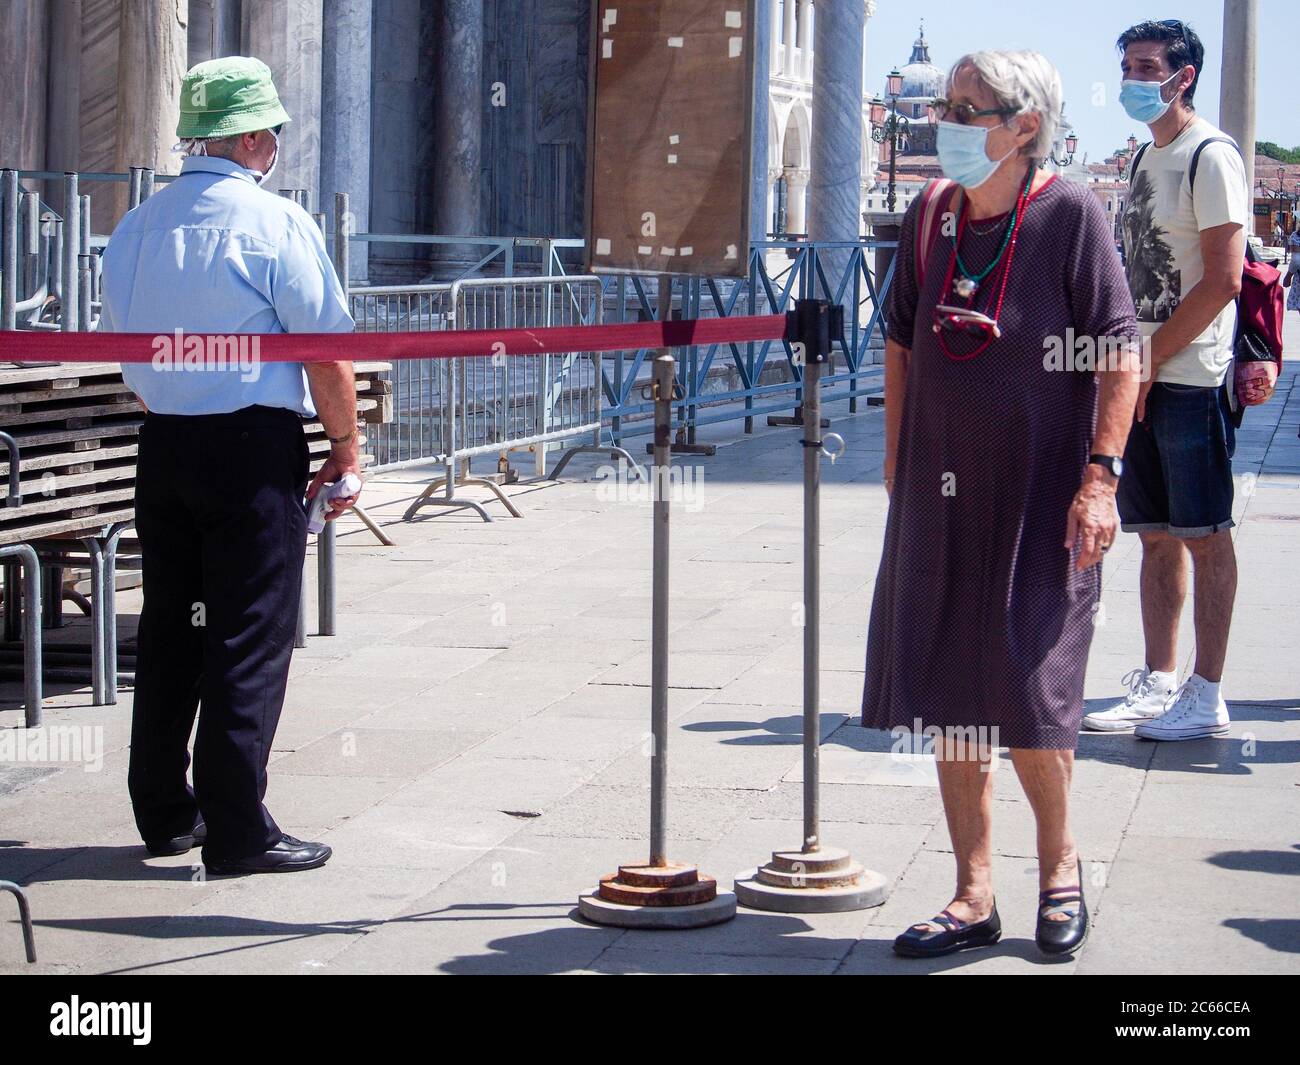 San Marco, Venise, Italie - juillet 2020. L'employé de l'entrée de la cathédrale scanne la fièvre de température corporelle touristique pour la prévention du covid-19. Peu de touristes sont de retour Banque D'Images